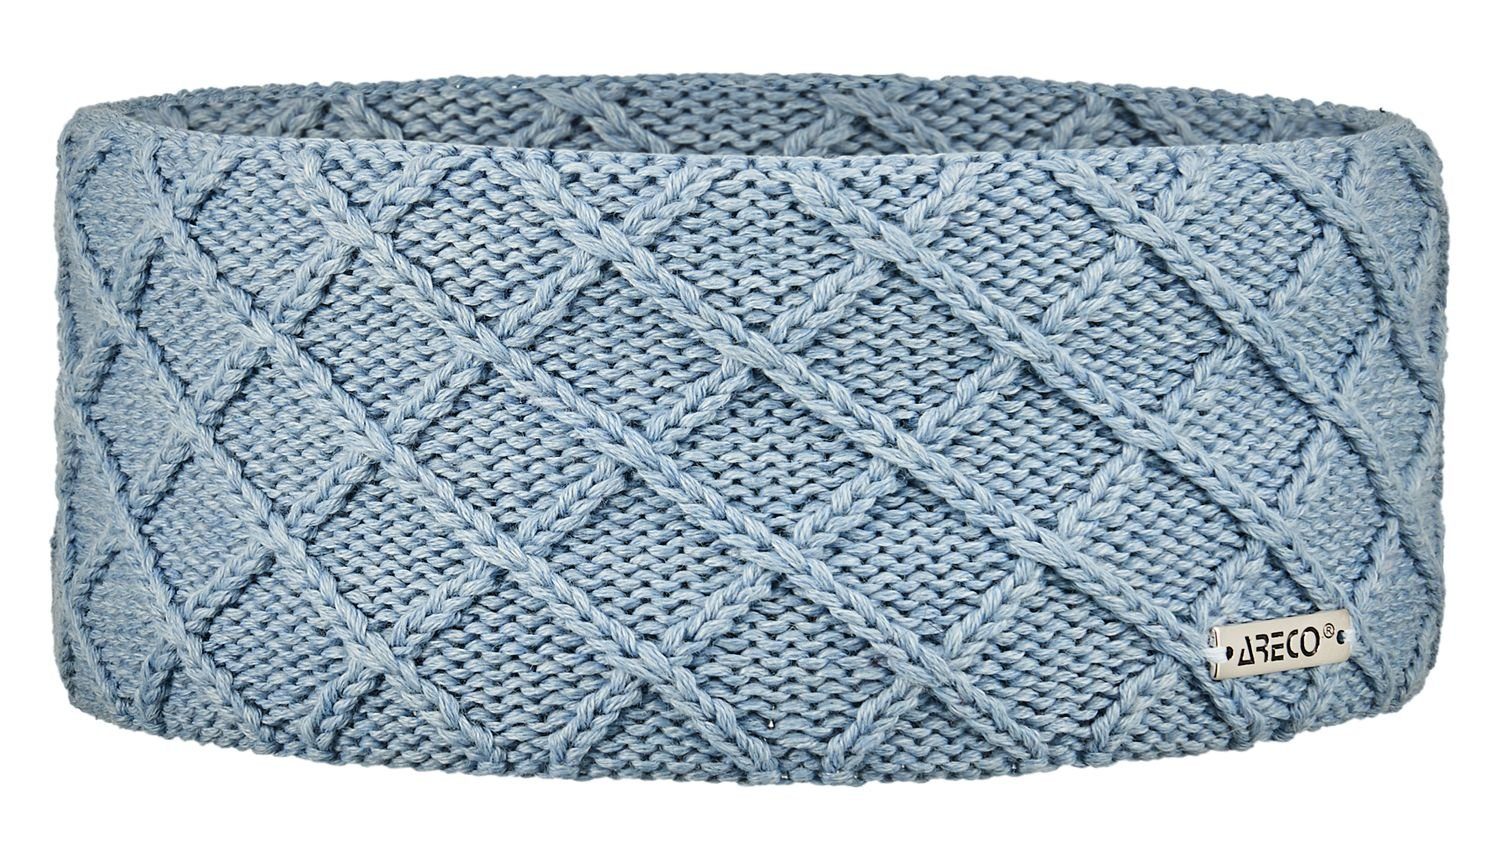 Fleeceband Stirnband Gitter-Muster bleu innen Stirnband Areco